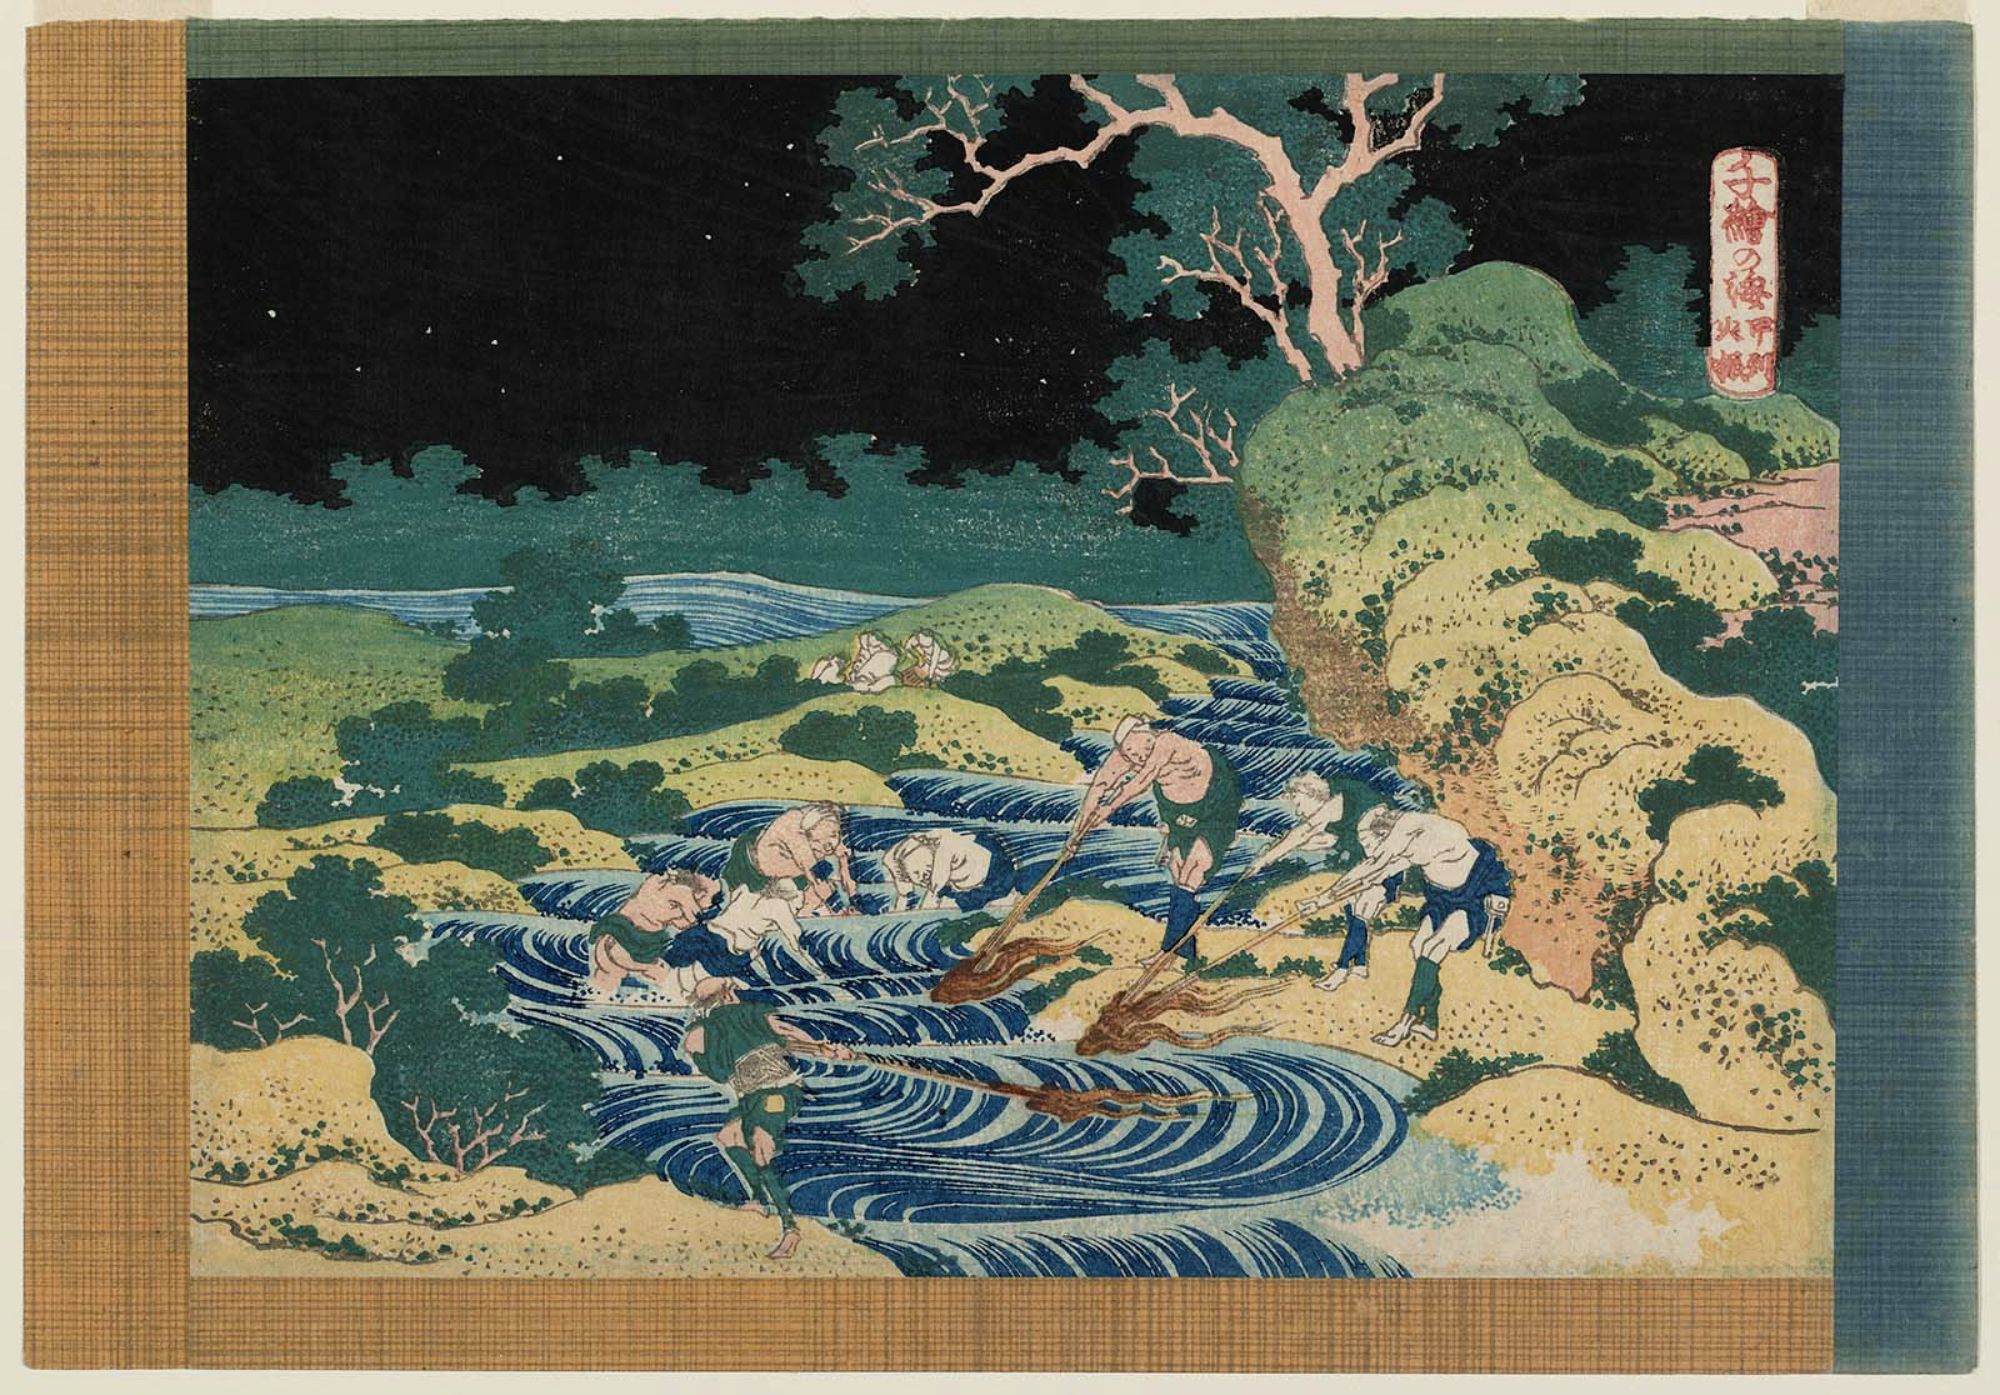 葛飾北斎 (Katsushika Hokusai) 木版画 千絵の海 総州利根川 初版1833年（天保4年）頃 やはり北斎の木版画は凄い!! 